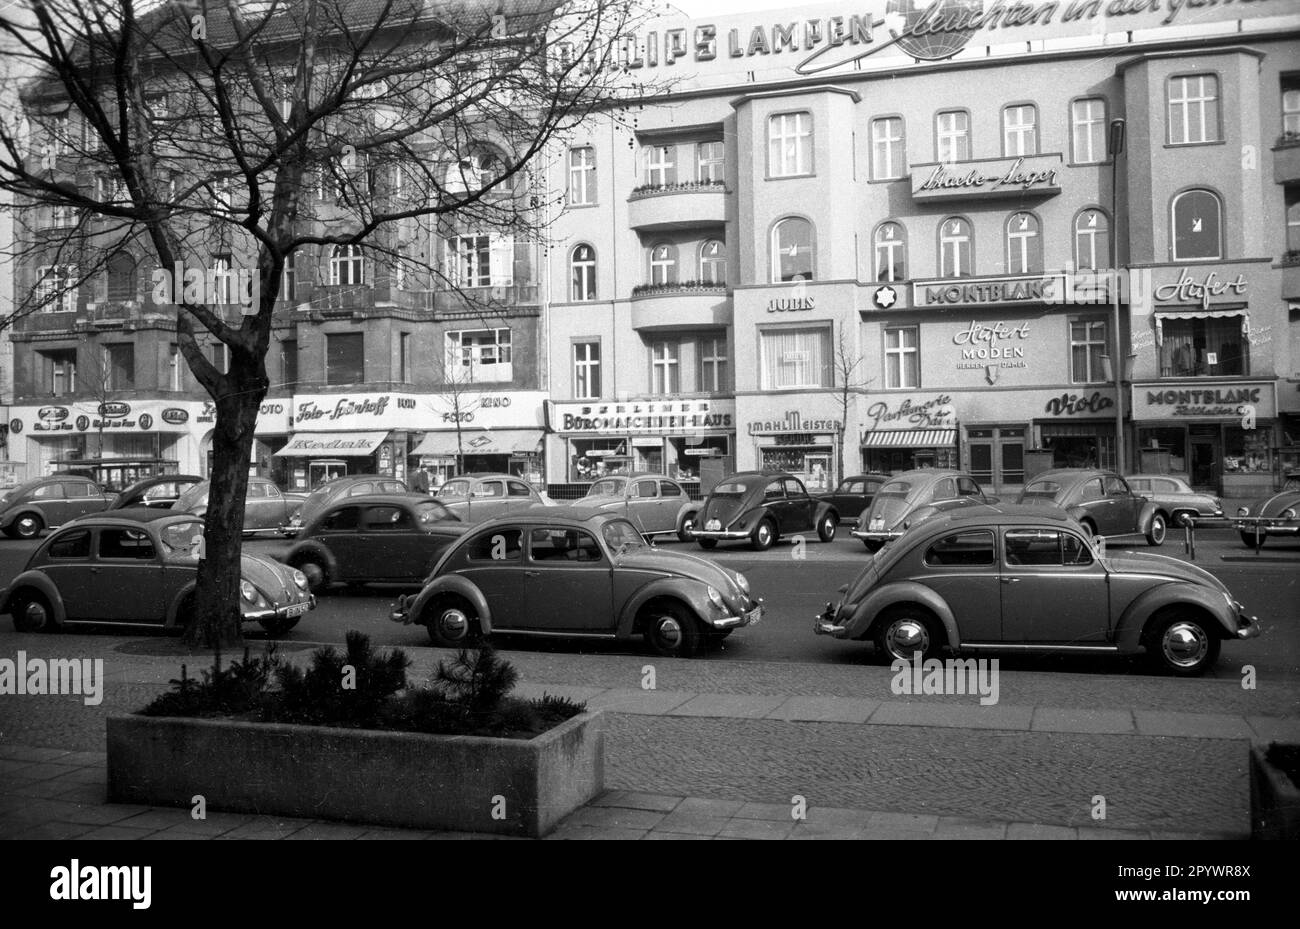 'Desde 1953, el VW Escarabajo se ha construido con la ventana trasera ovalada. Varios escarabajos Volkswagen con el apodo ''Ovalie'' se encuentran en una calle de Berlín. Foto sin fecha, alrededor de 1953.' Foto de stock